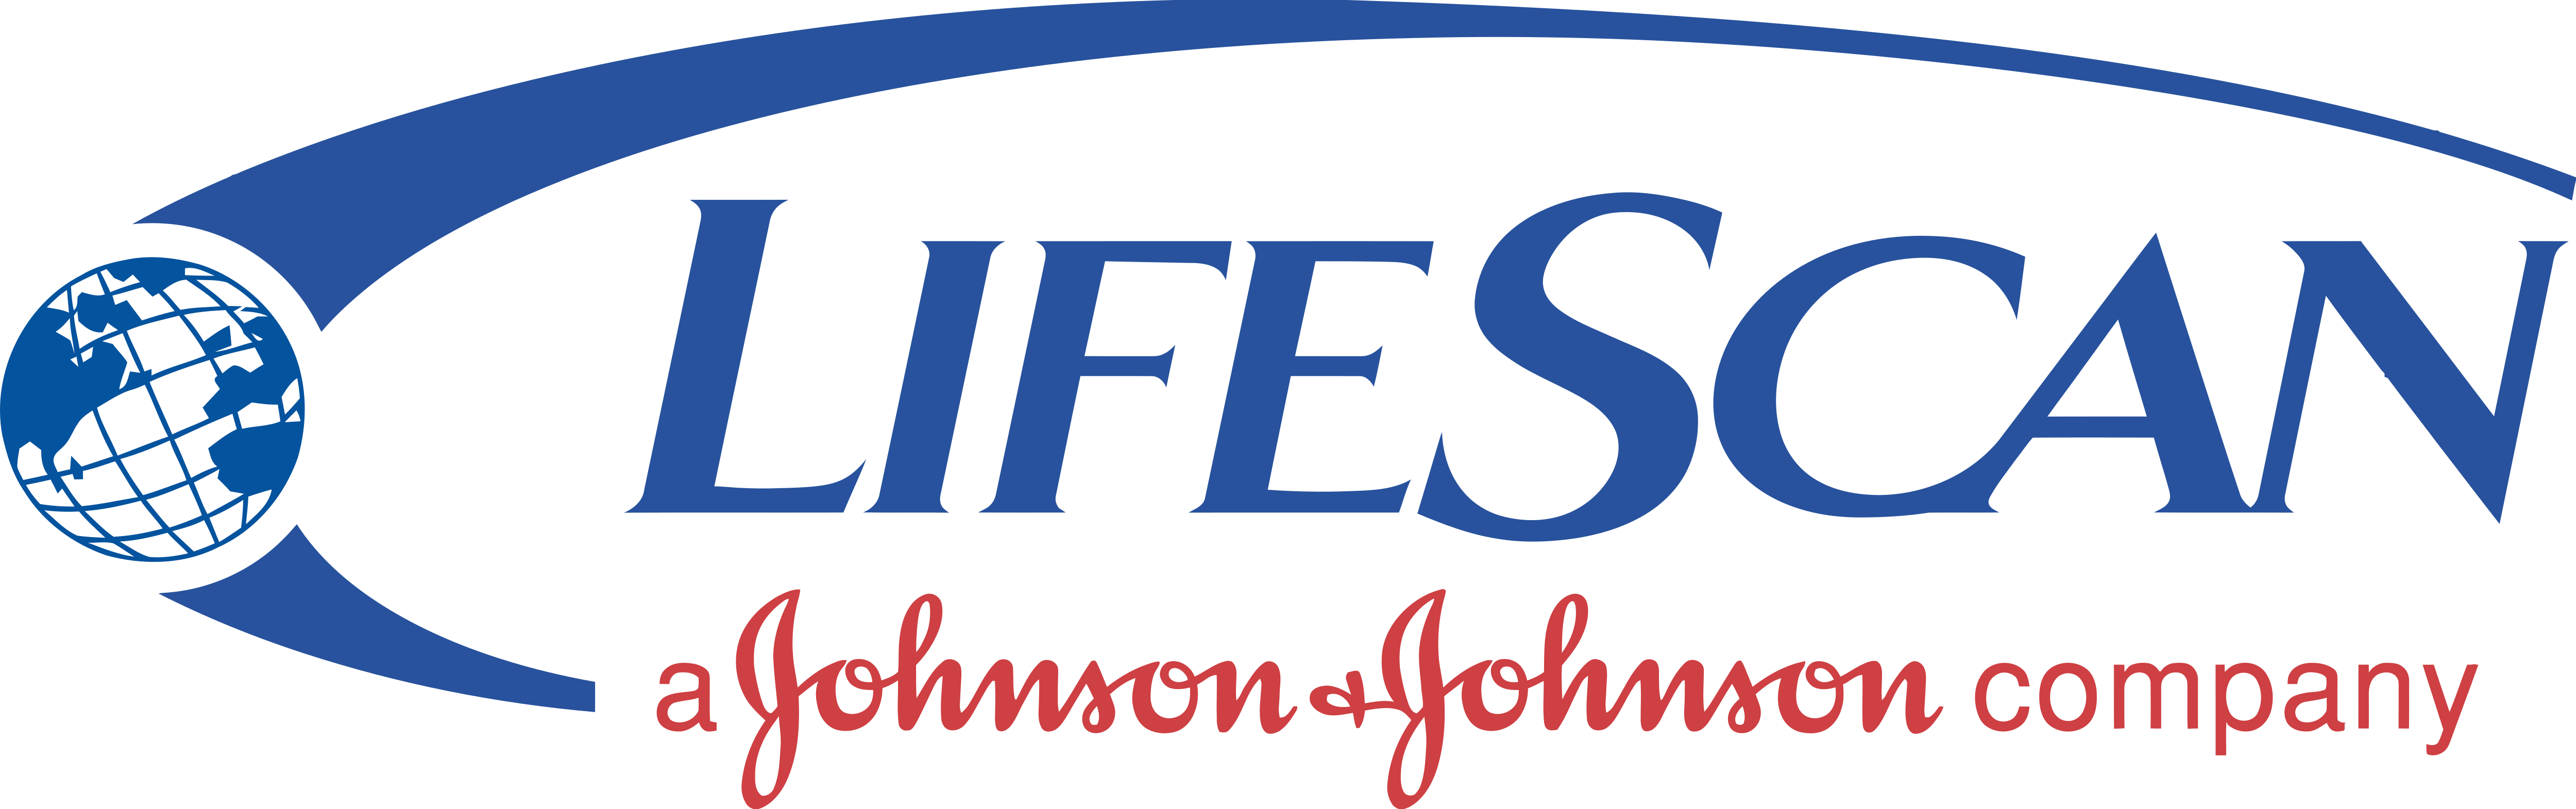 LIFESCAN logo